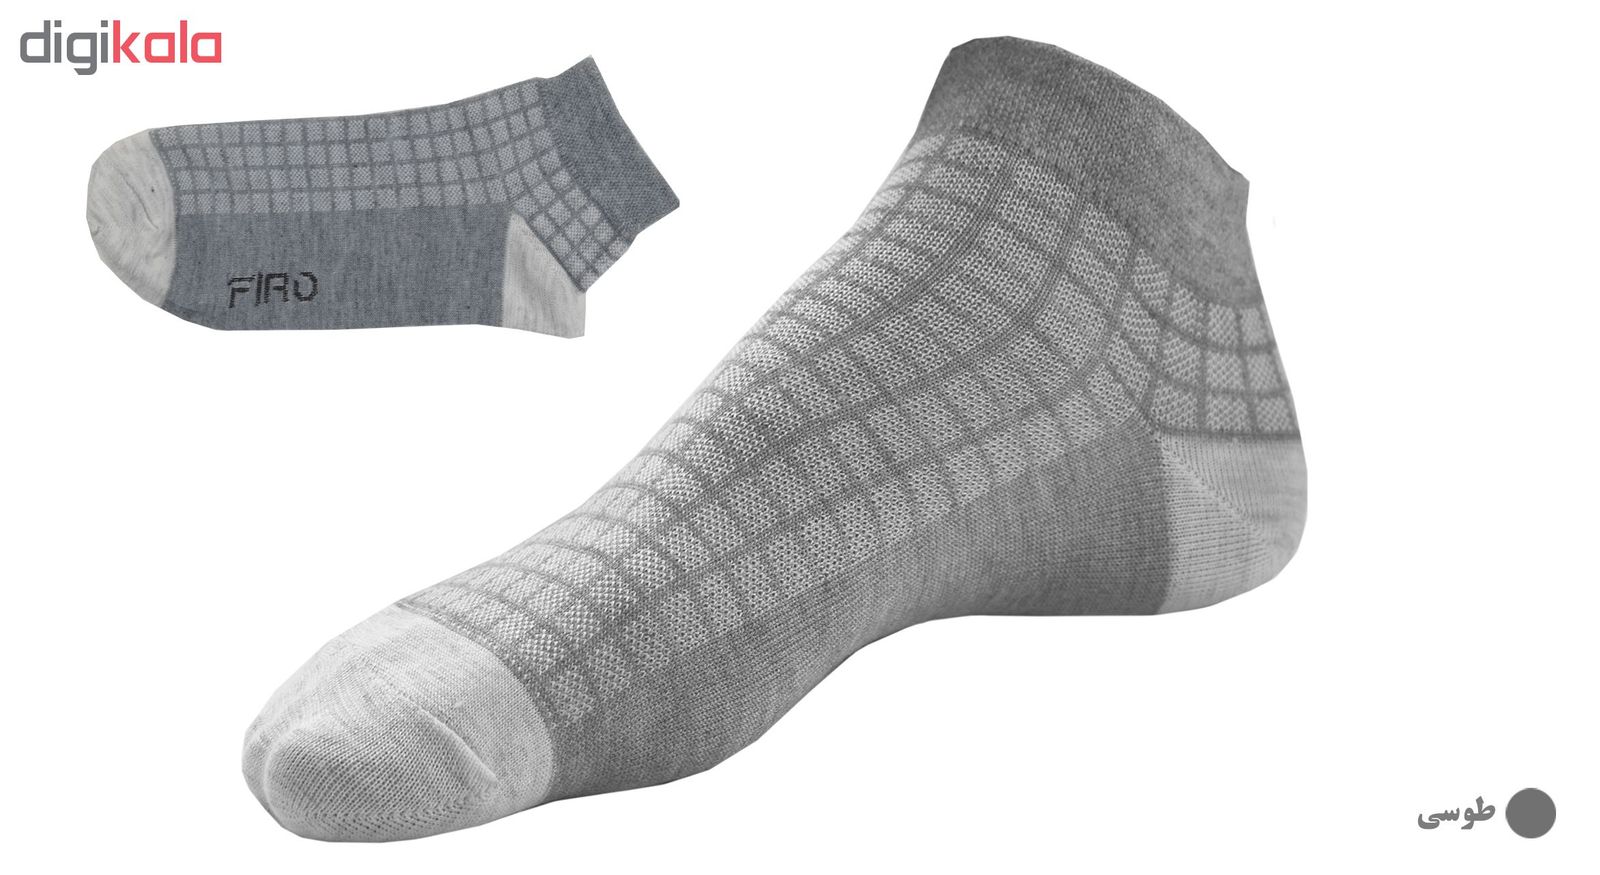 جوراب مردانه فیرو کد FT251 مجموعه 3 عددی -  - 2